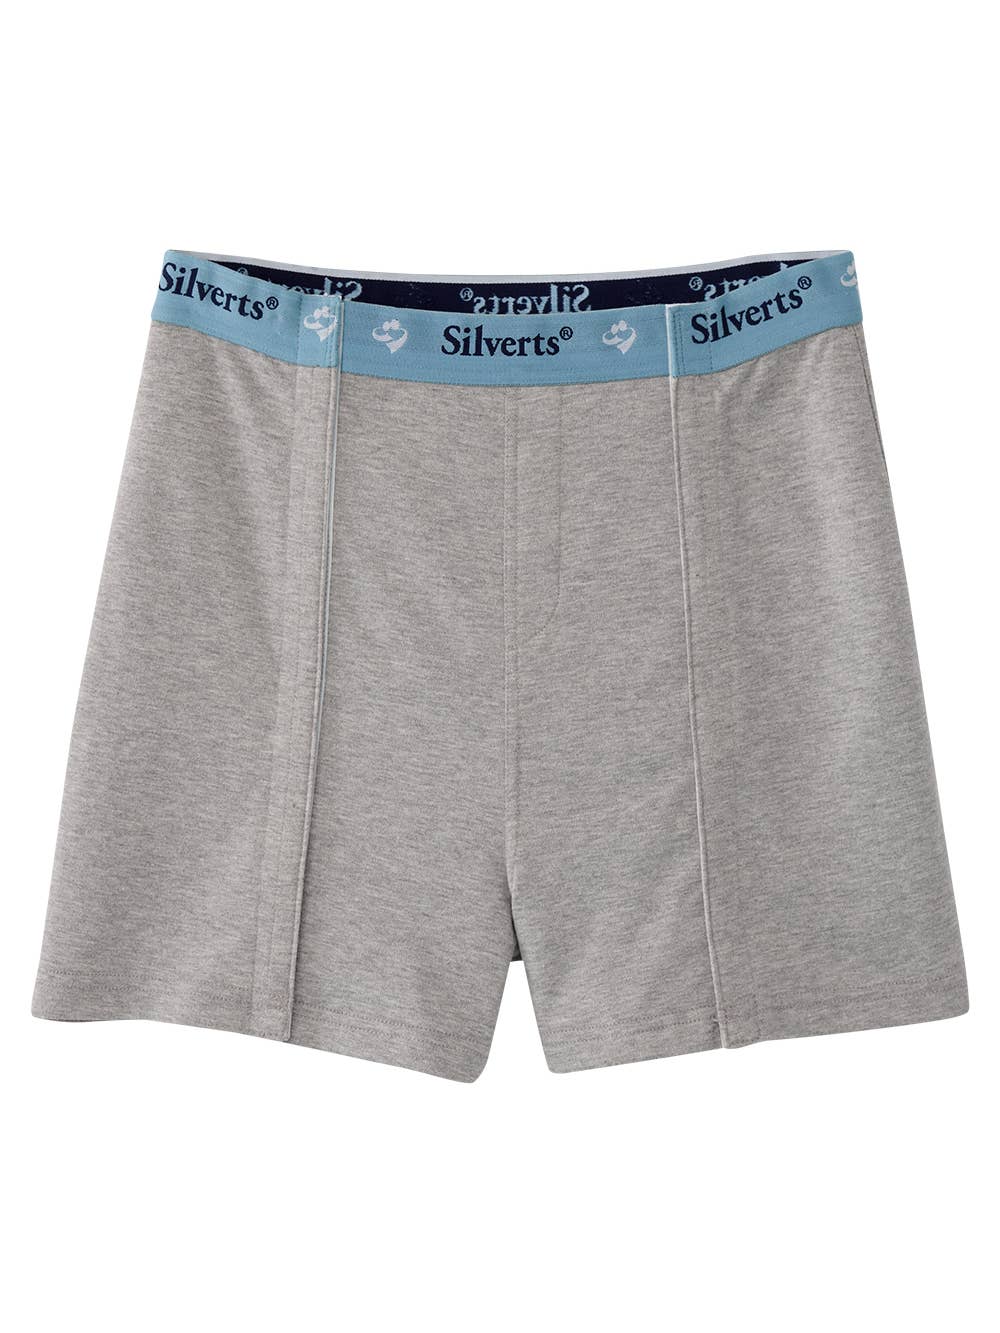 Men's Open Front Underwear - 3 pack